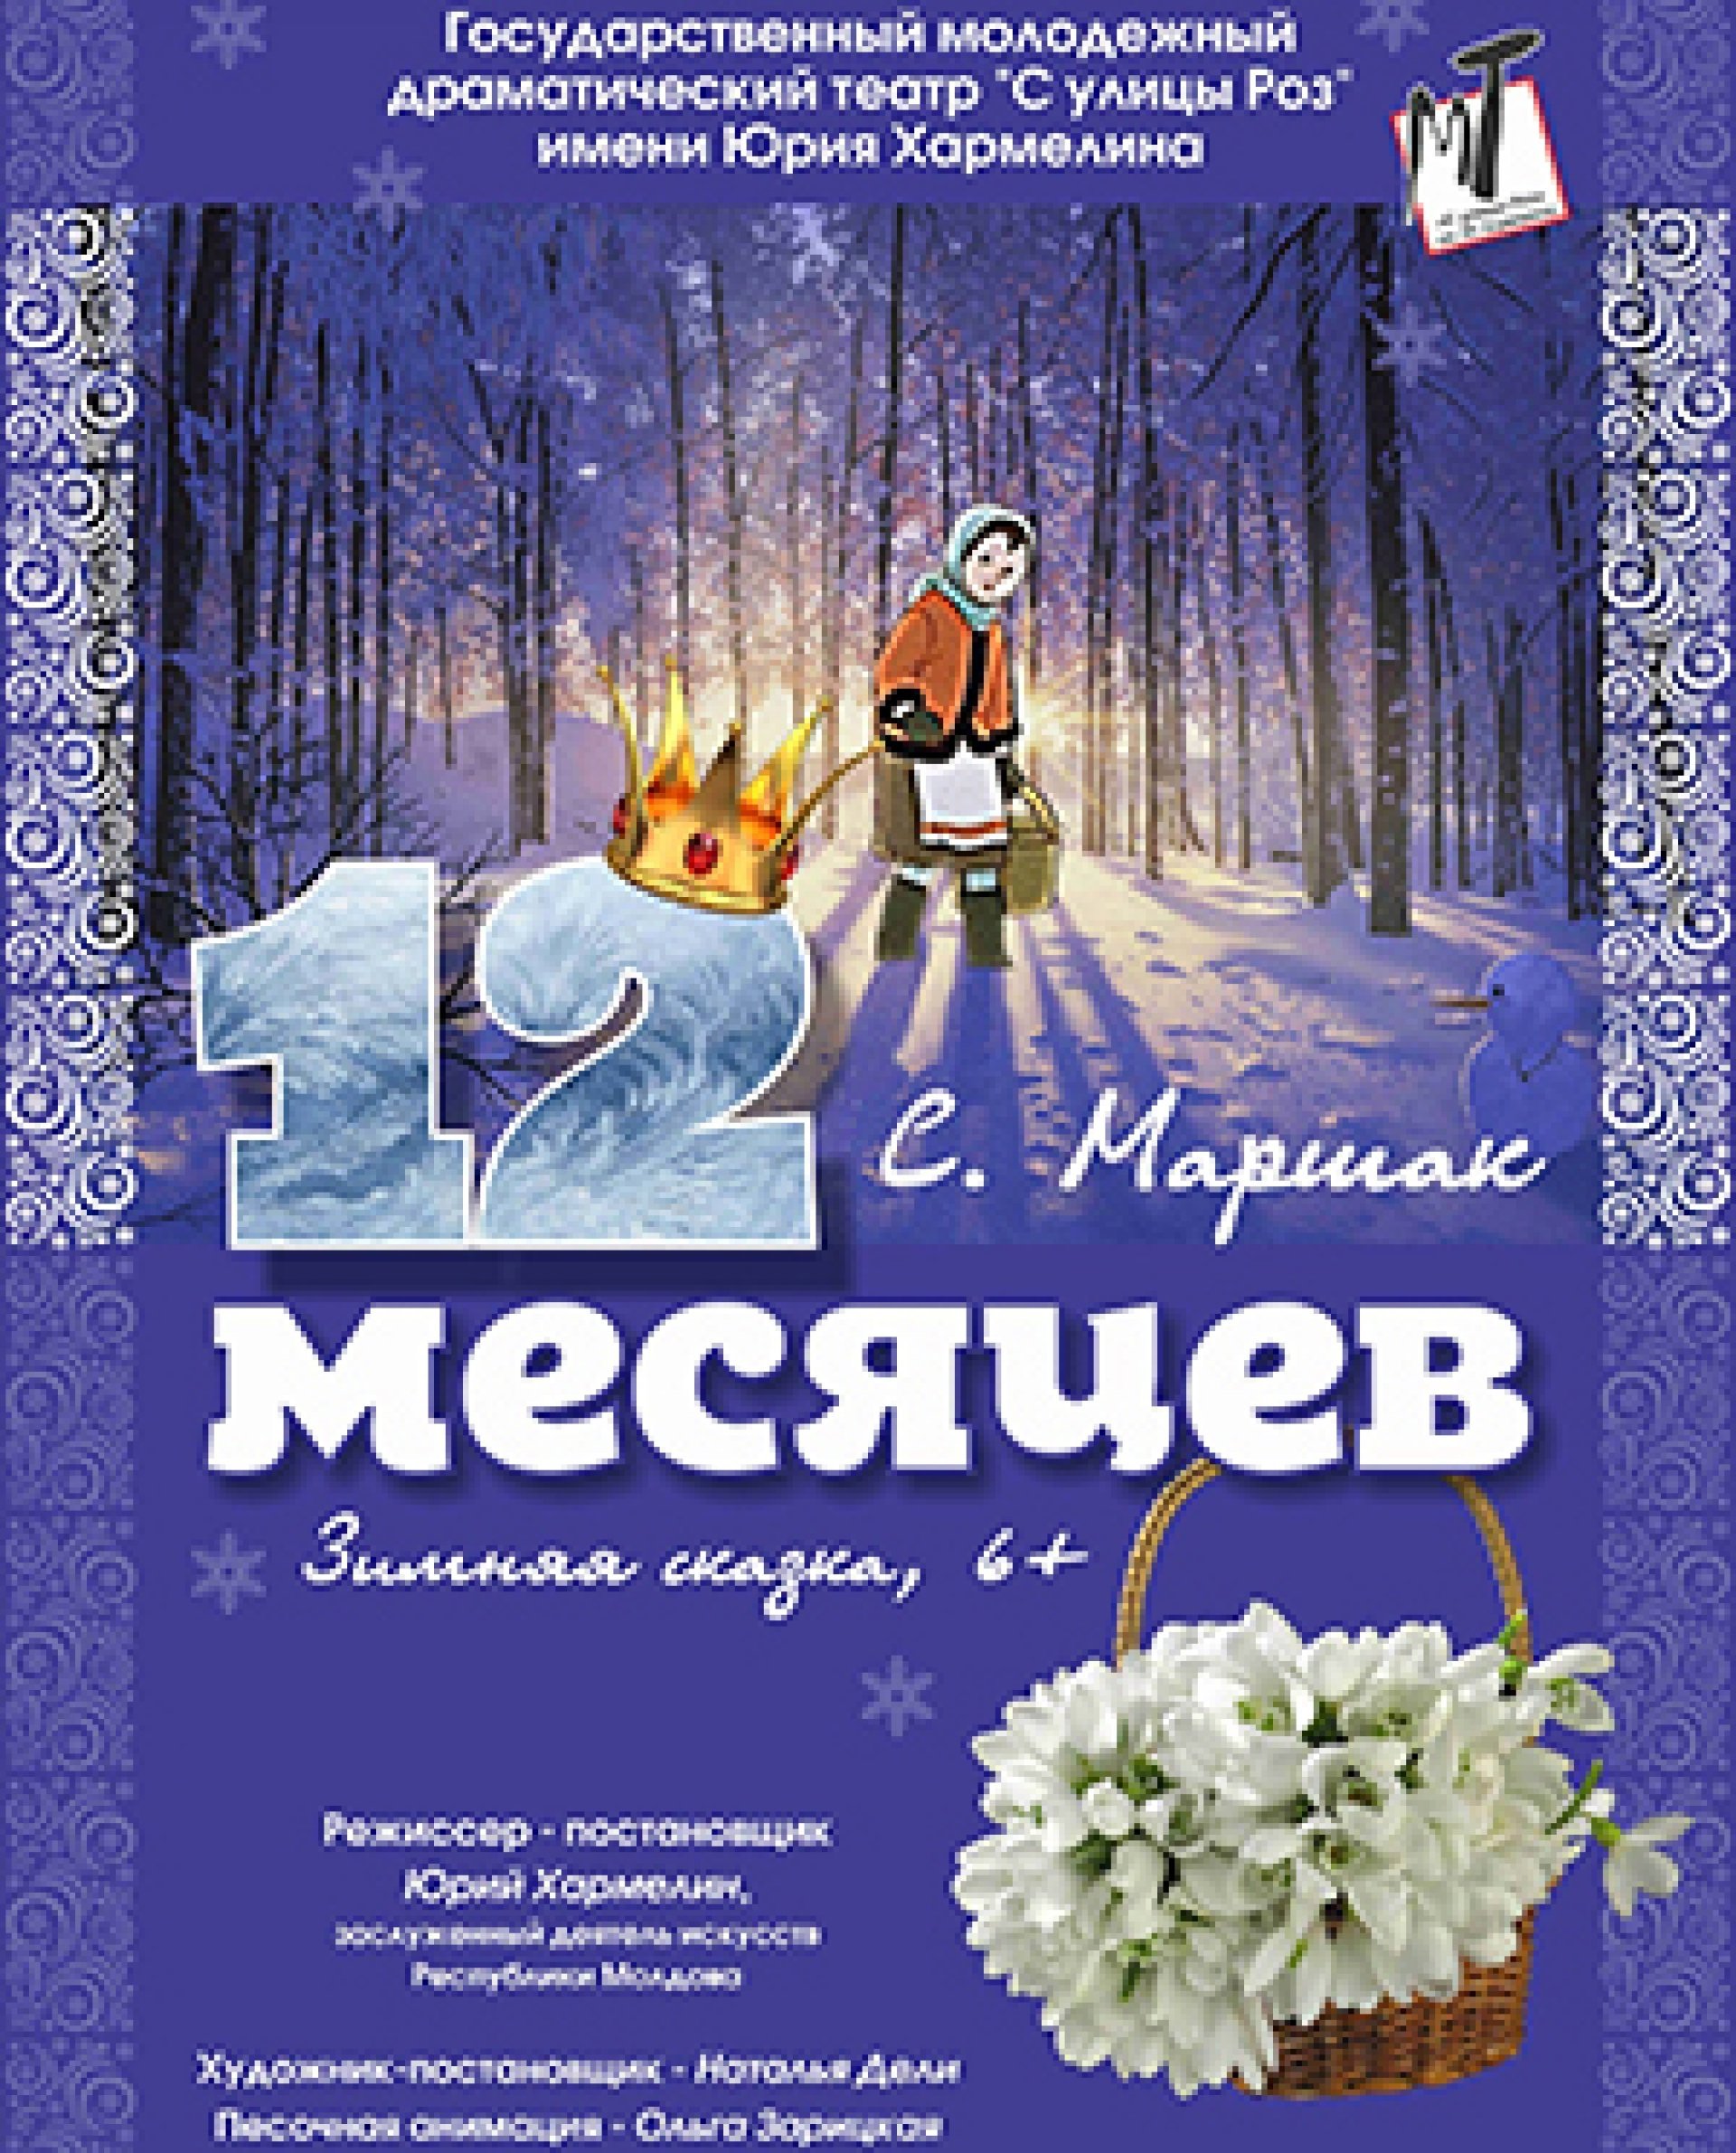 ДВЕНАДЦАТЬ МЕСЯЦЕВ - 16.01.22 в 14-00